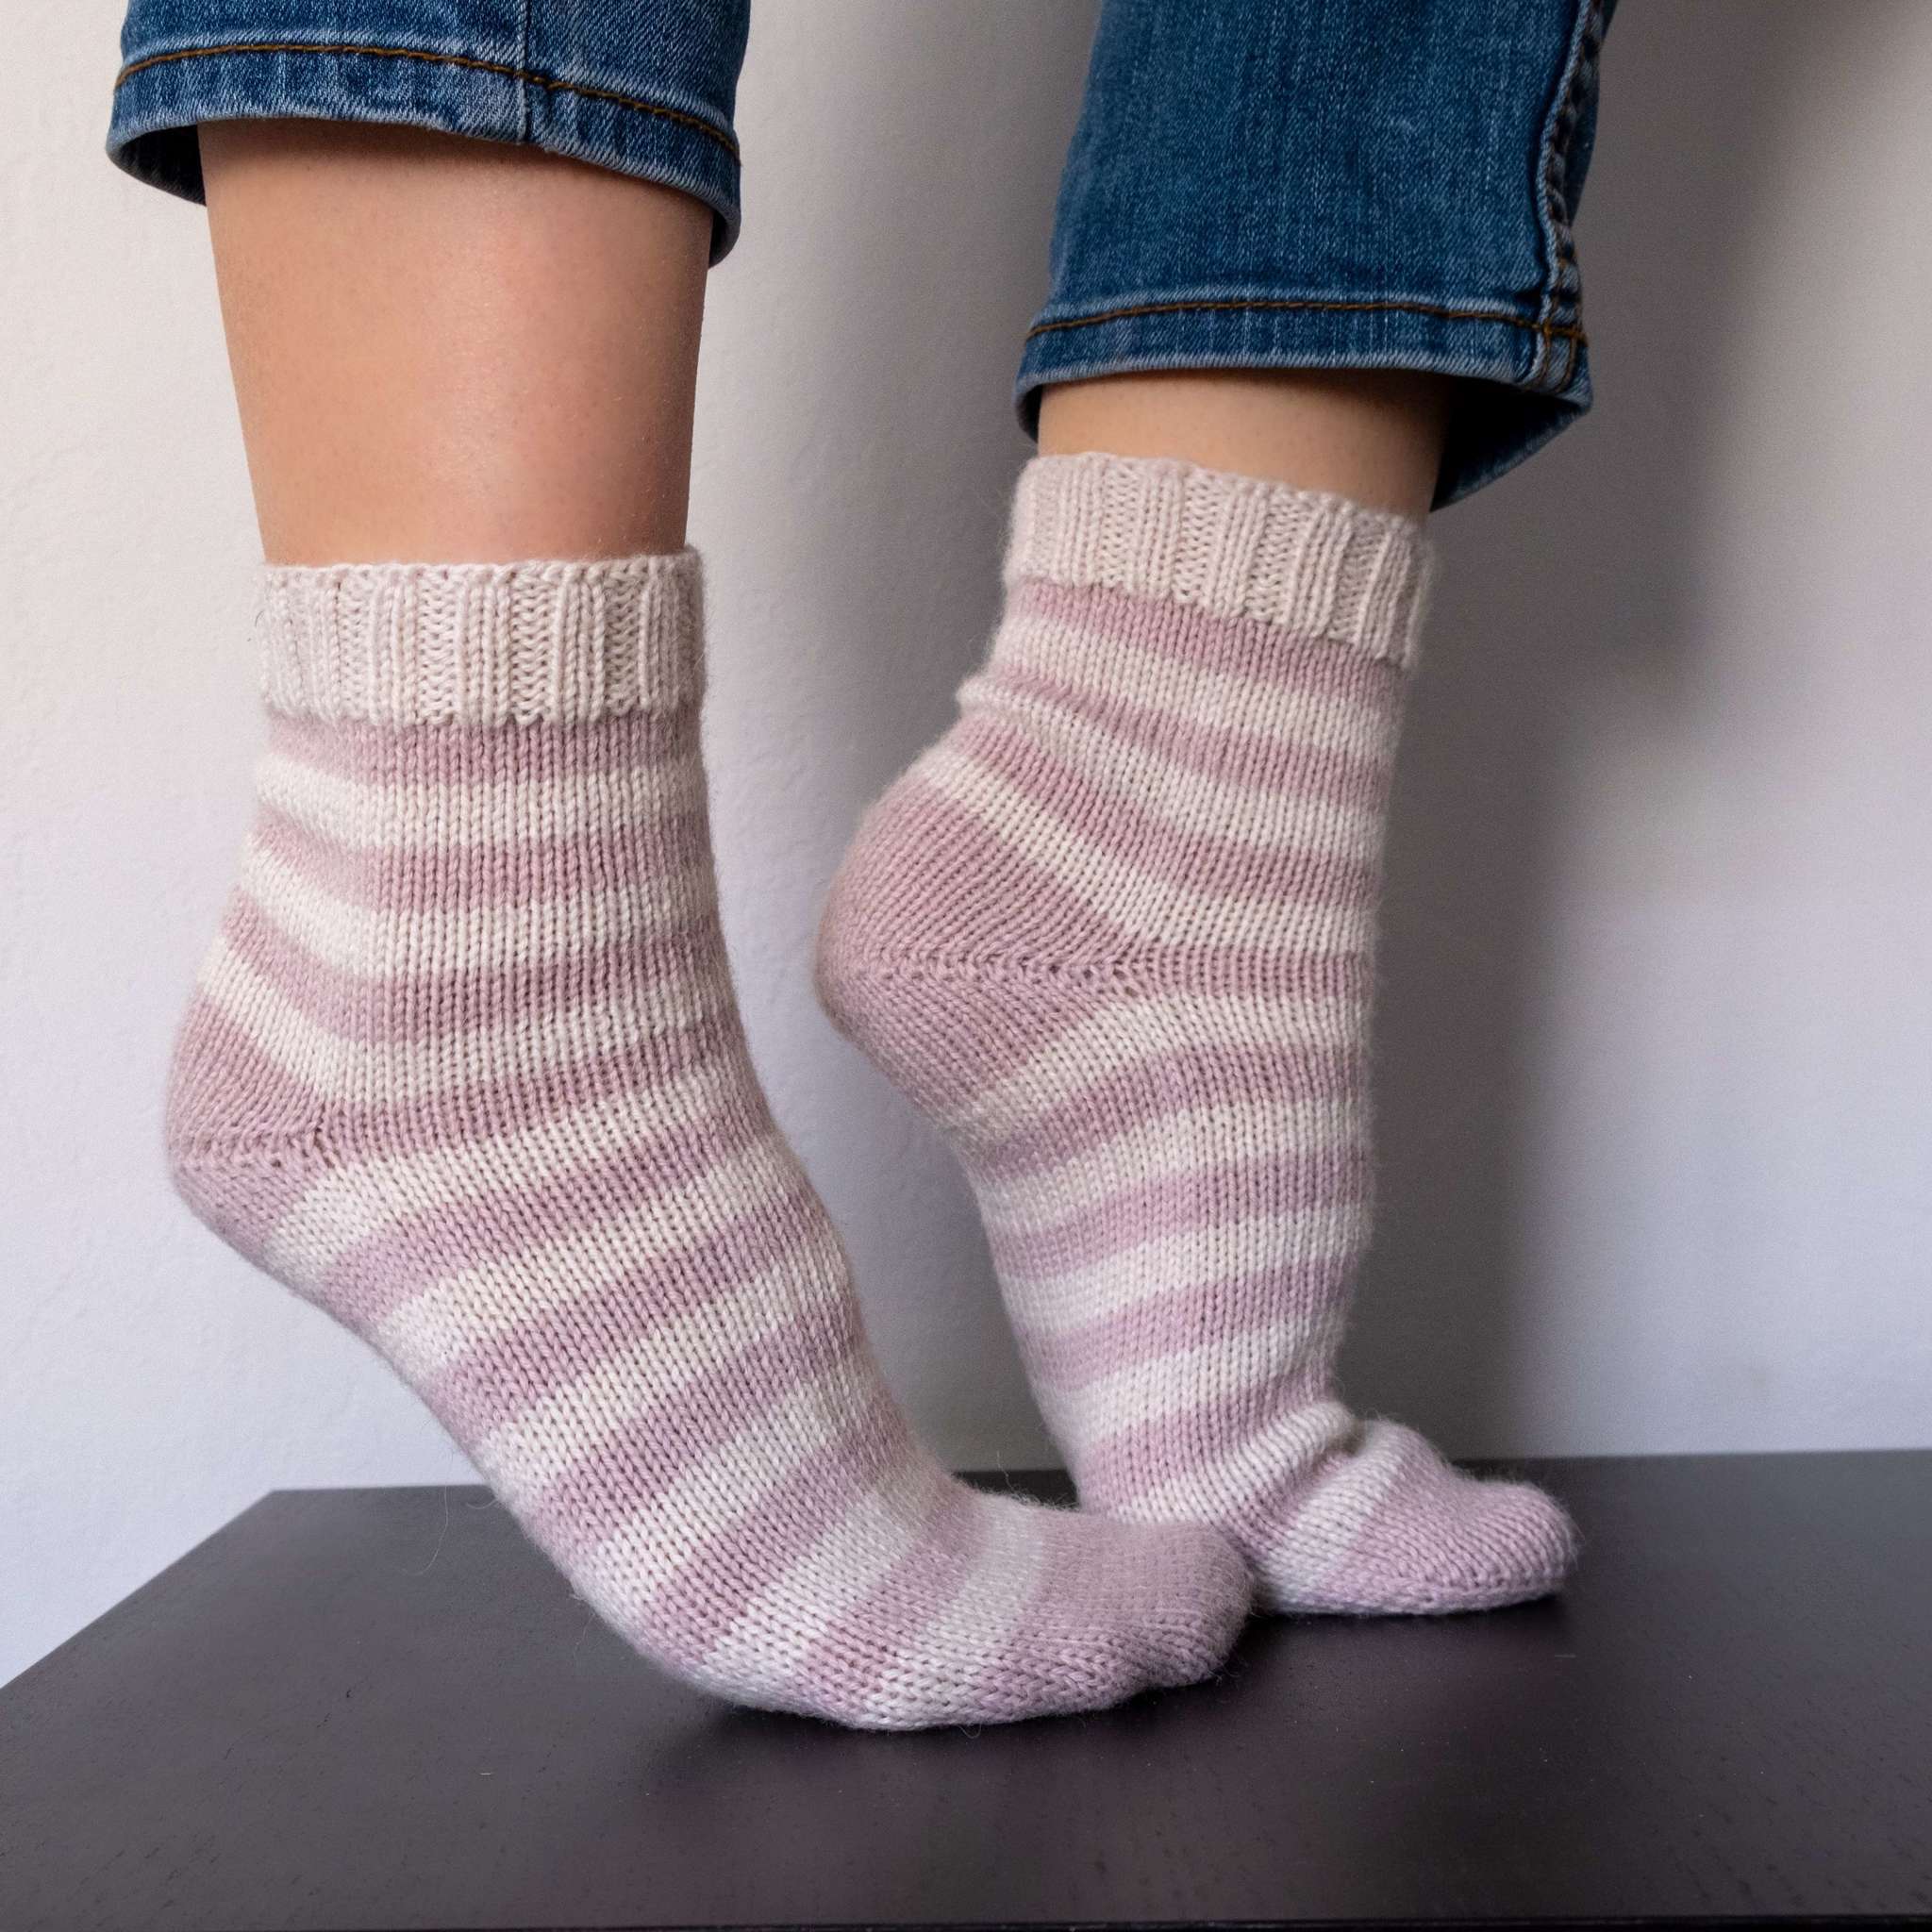 Как вязать носки 5 спицами для начинающих: “Бабушкин” способ пошагово